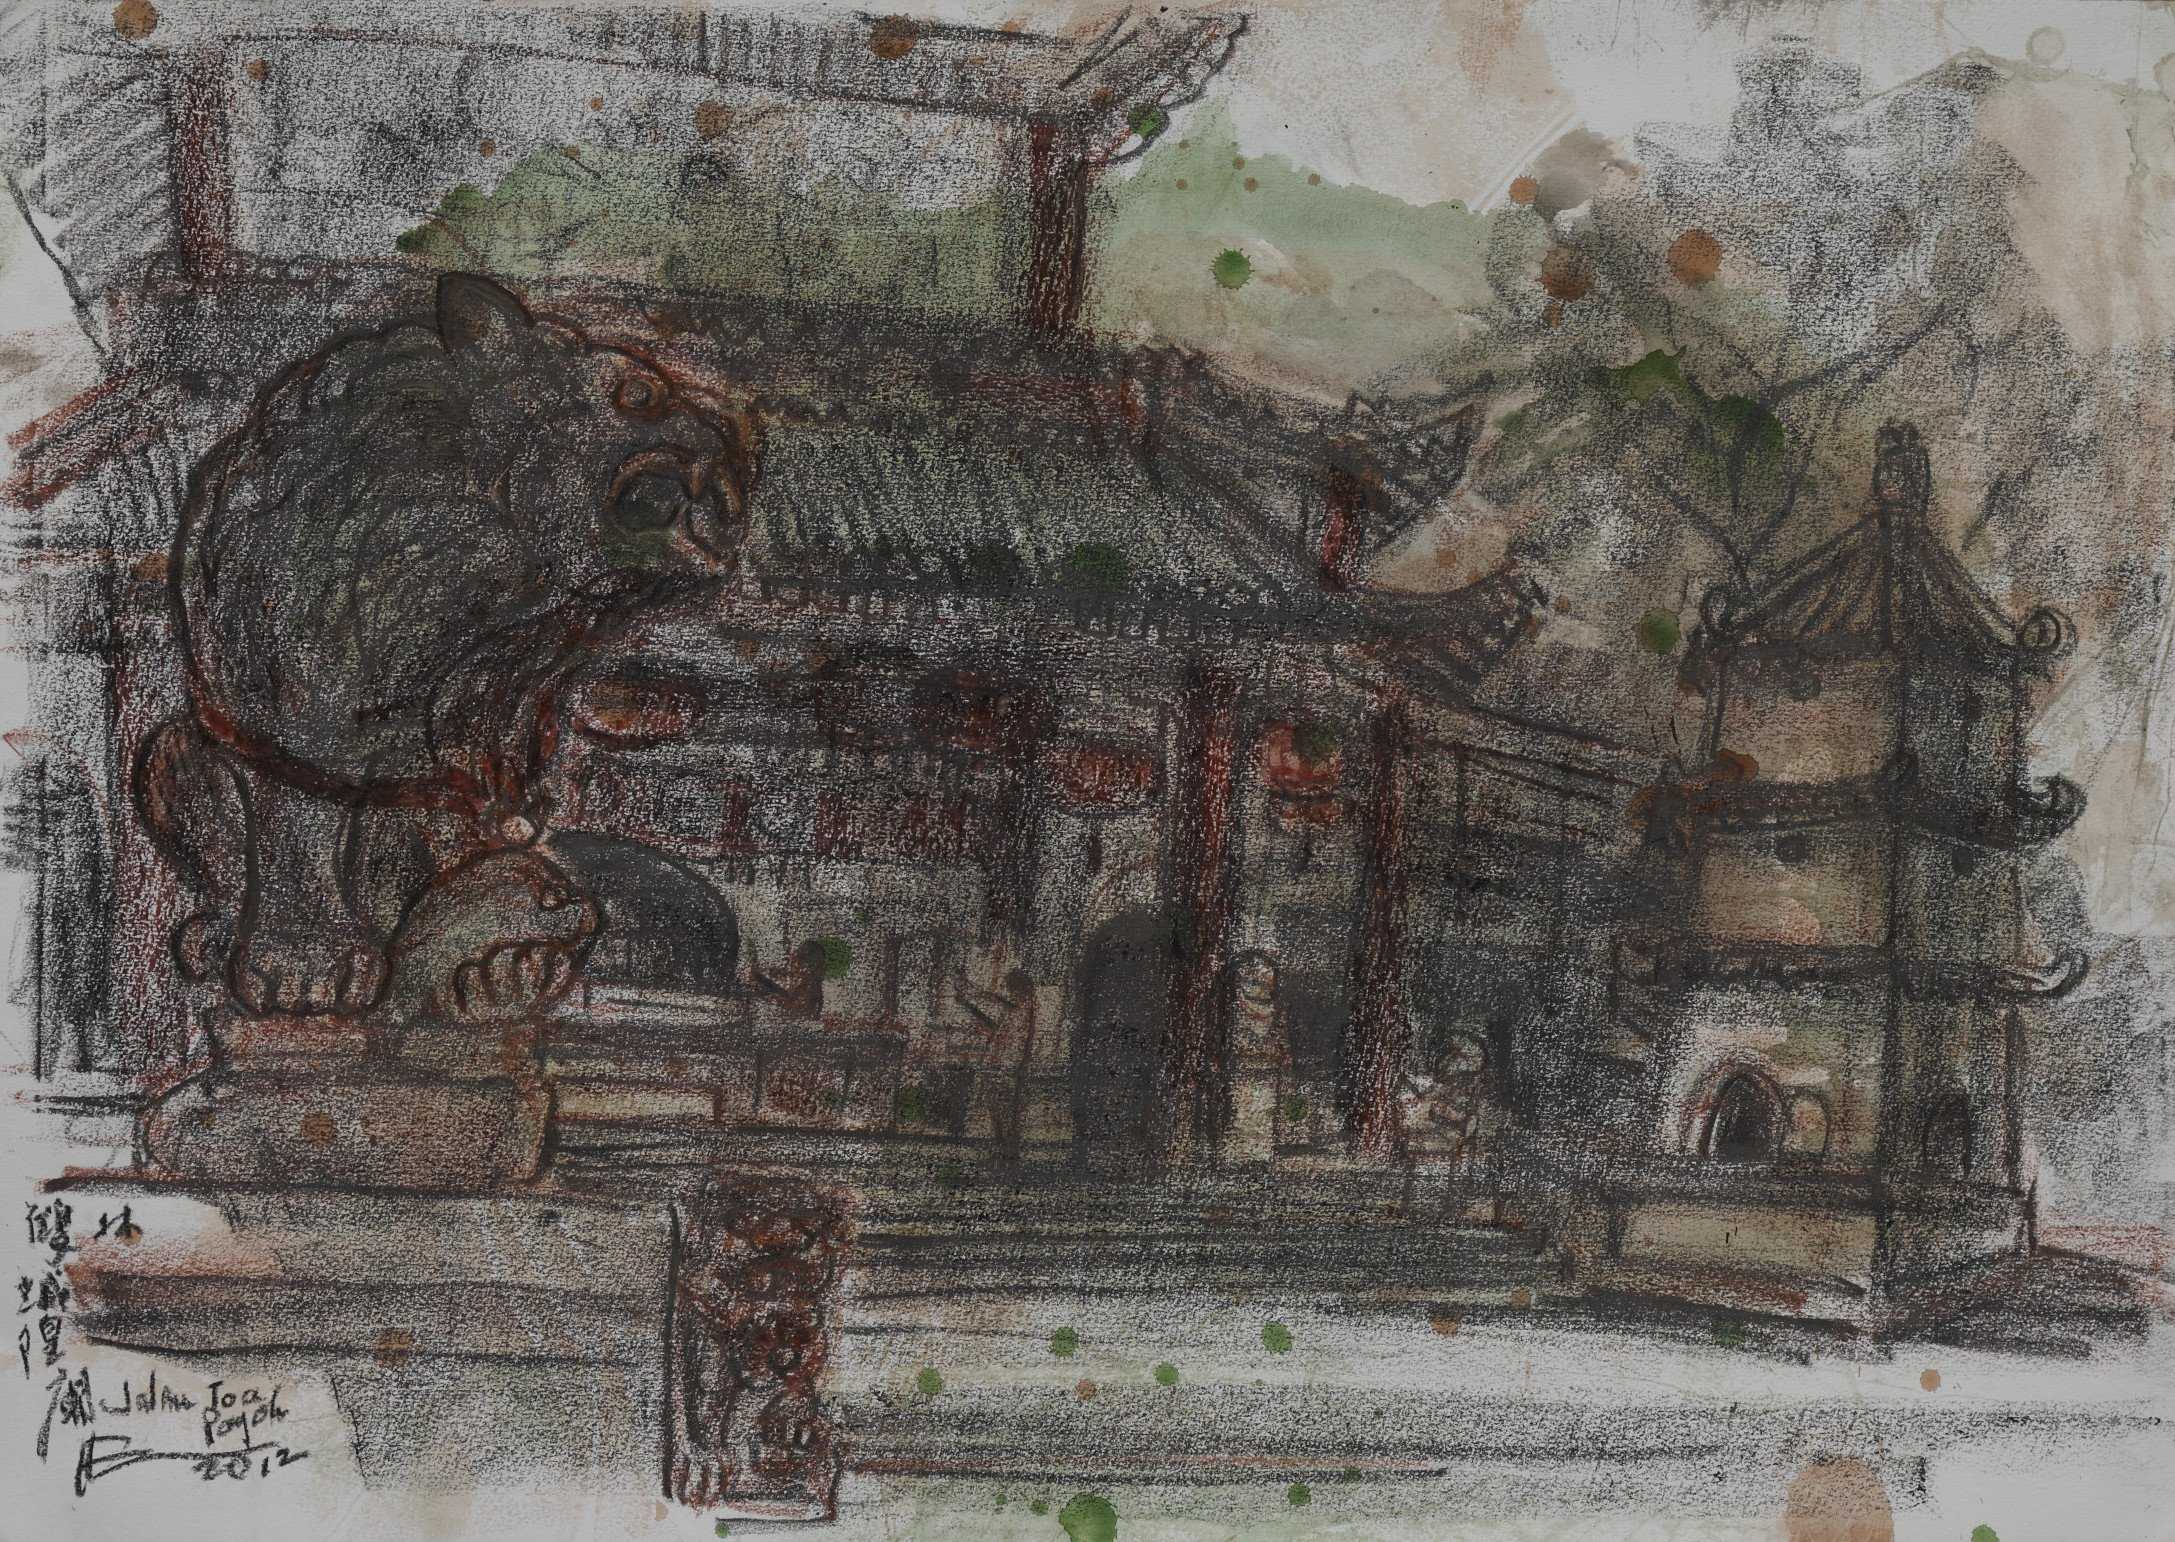 Shuang Lin Cheng Huang Miao Temple